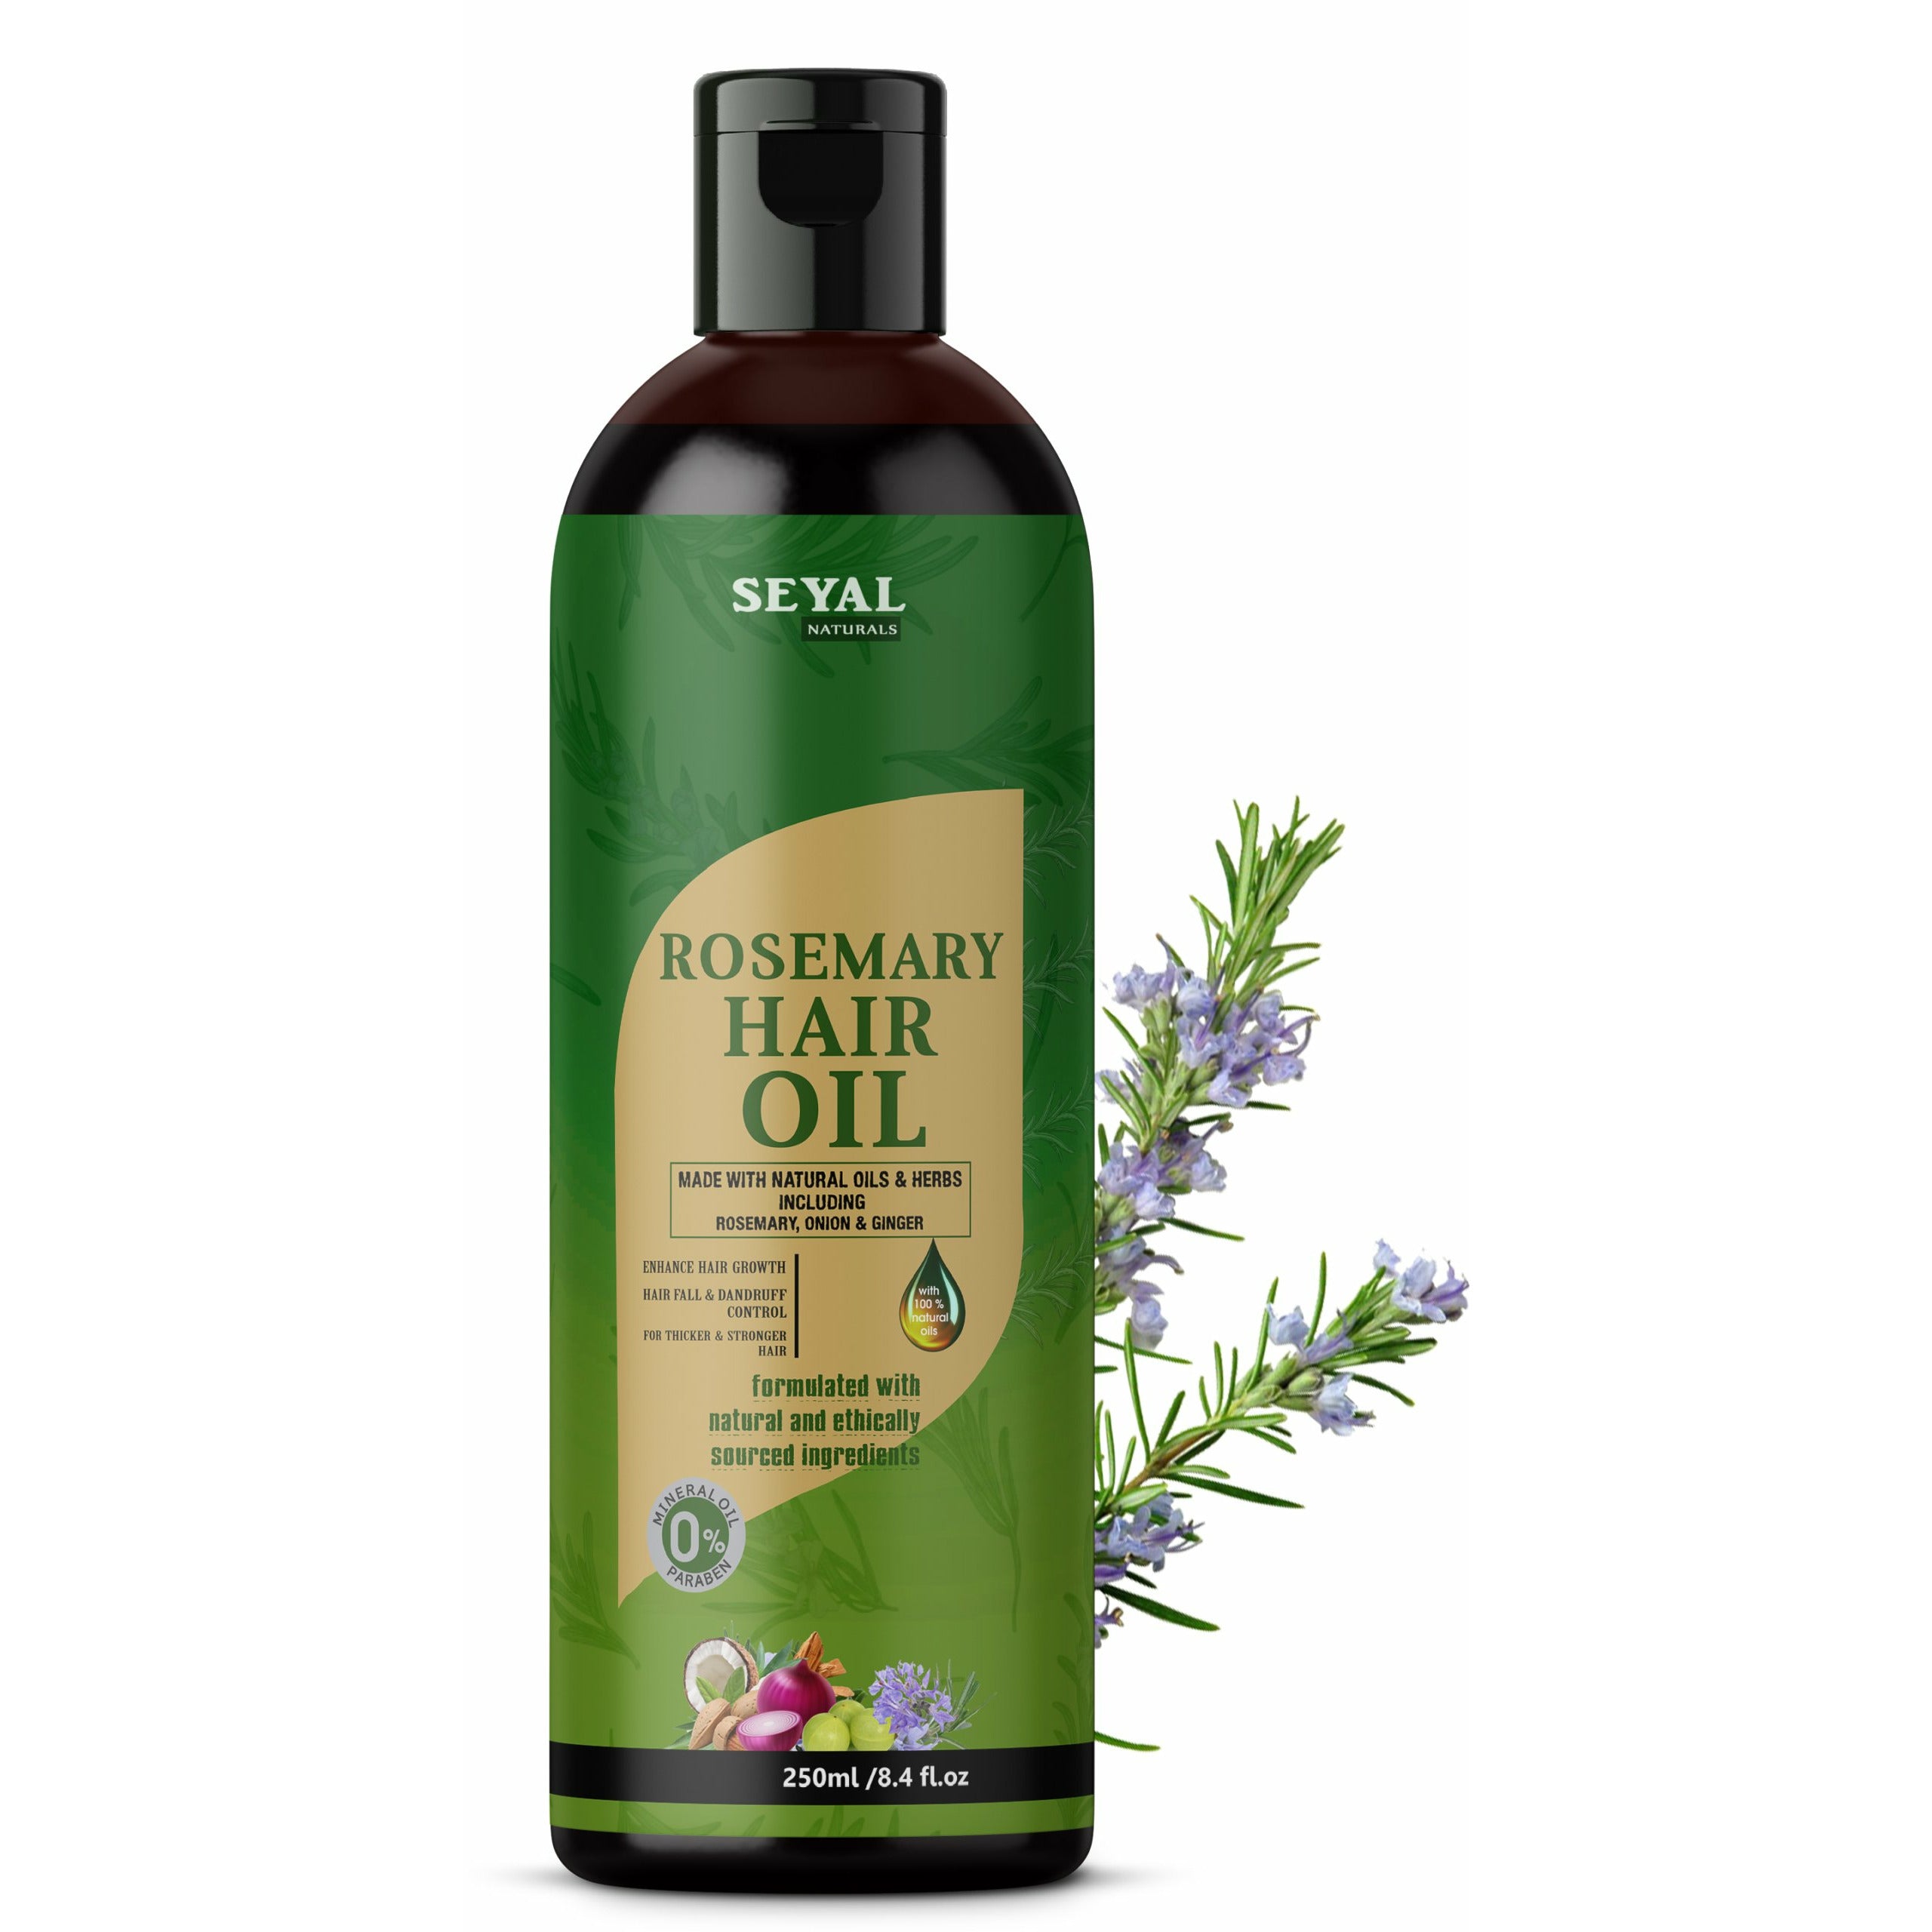 Seyal Rosemary Hair Oil For Hair Fall Control & Hair Growth - 250ml